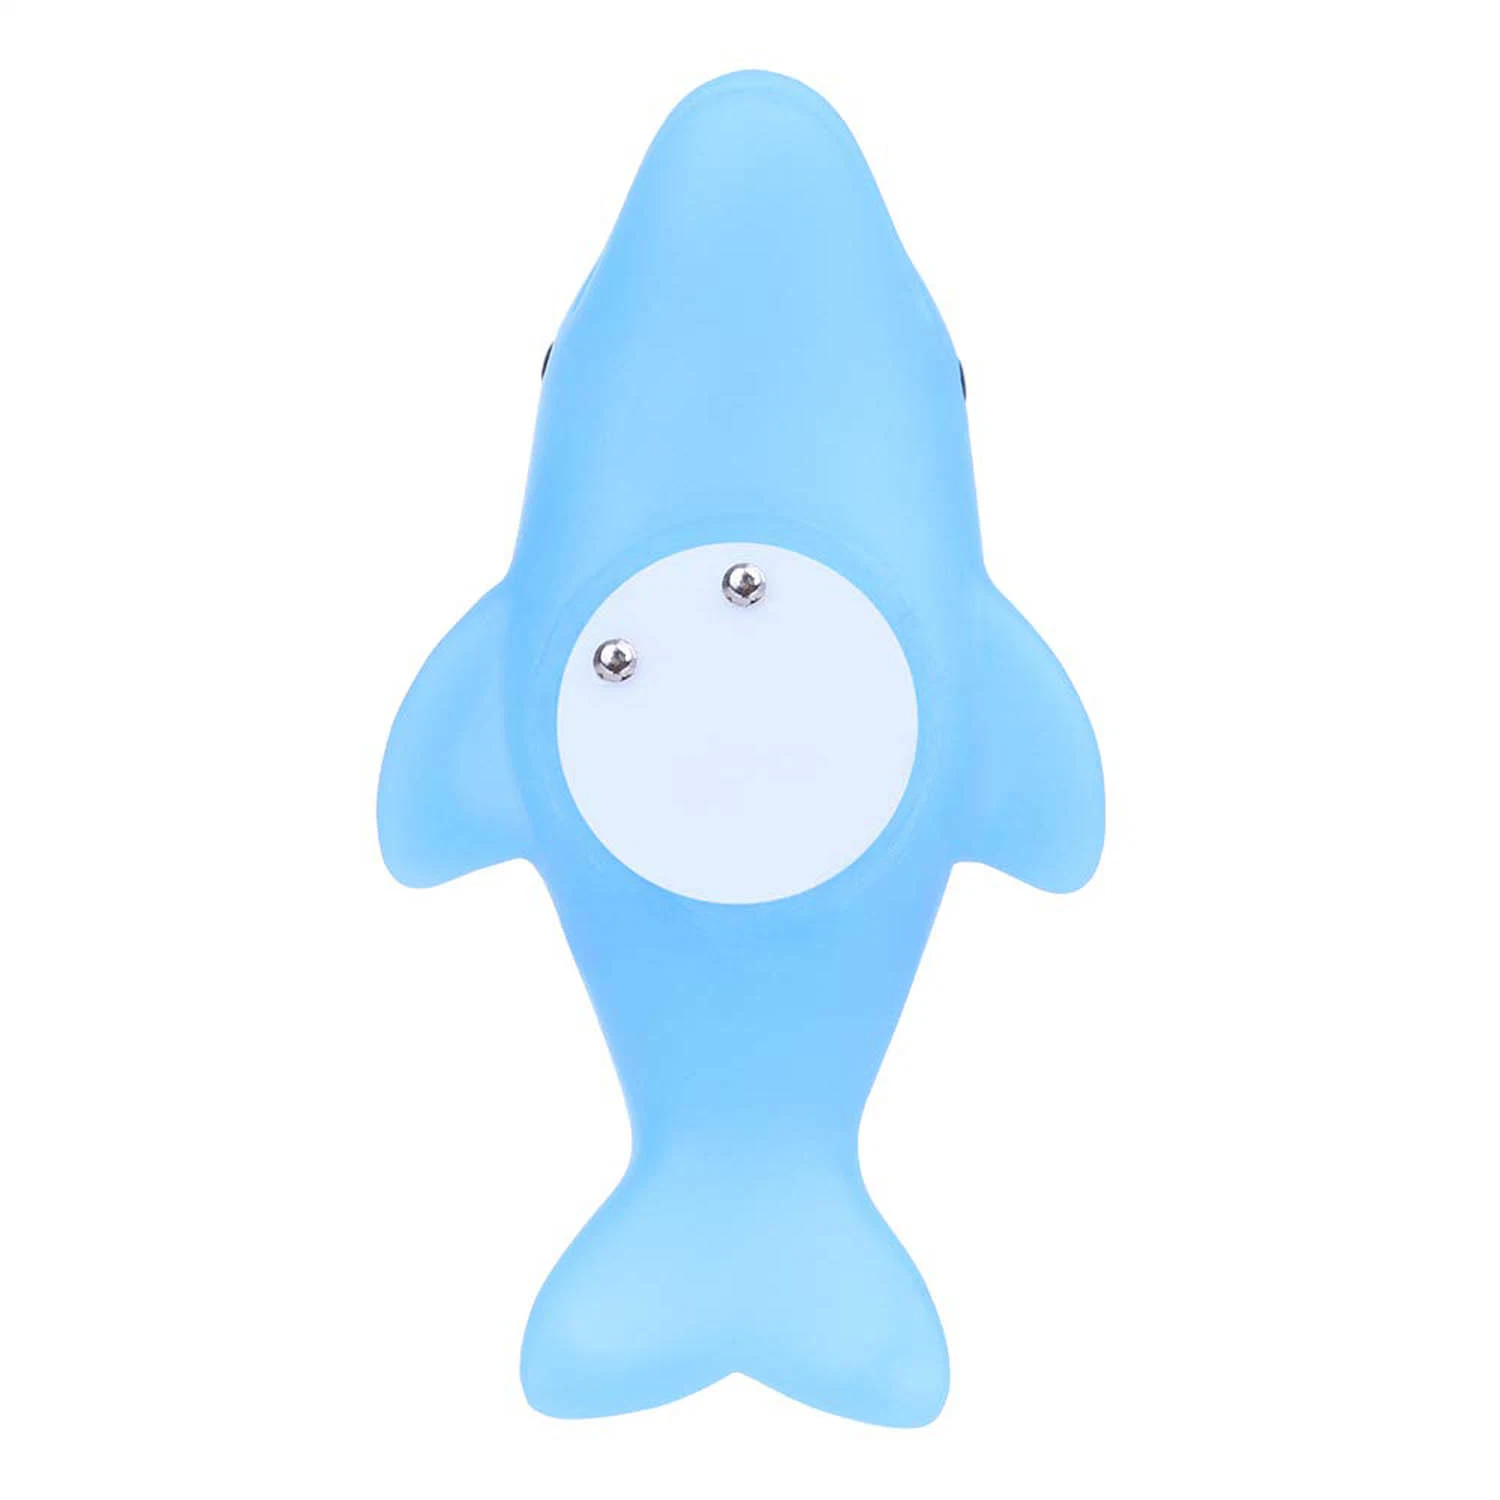 LED Floating Dolphin Bath Toys Fun Bathtub Bathroom Toys